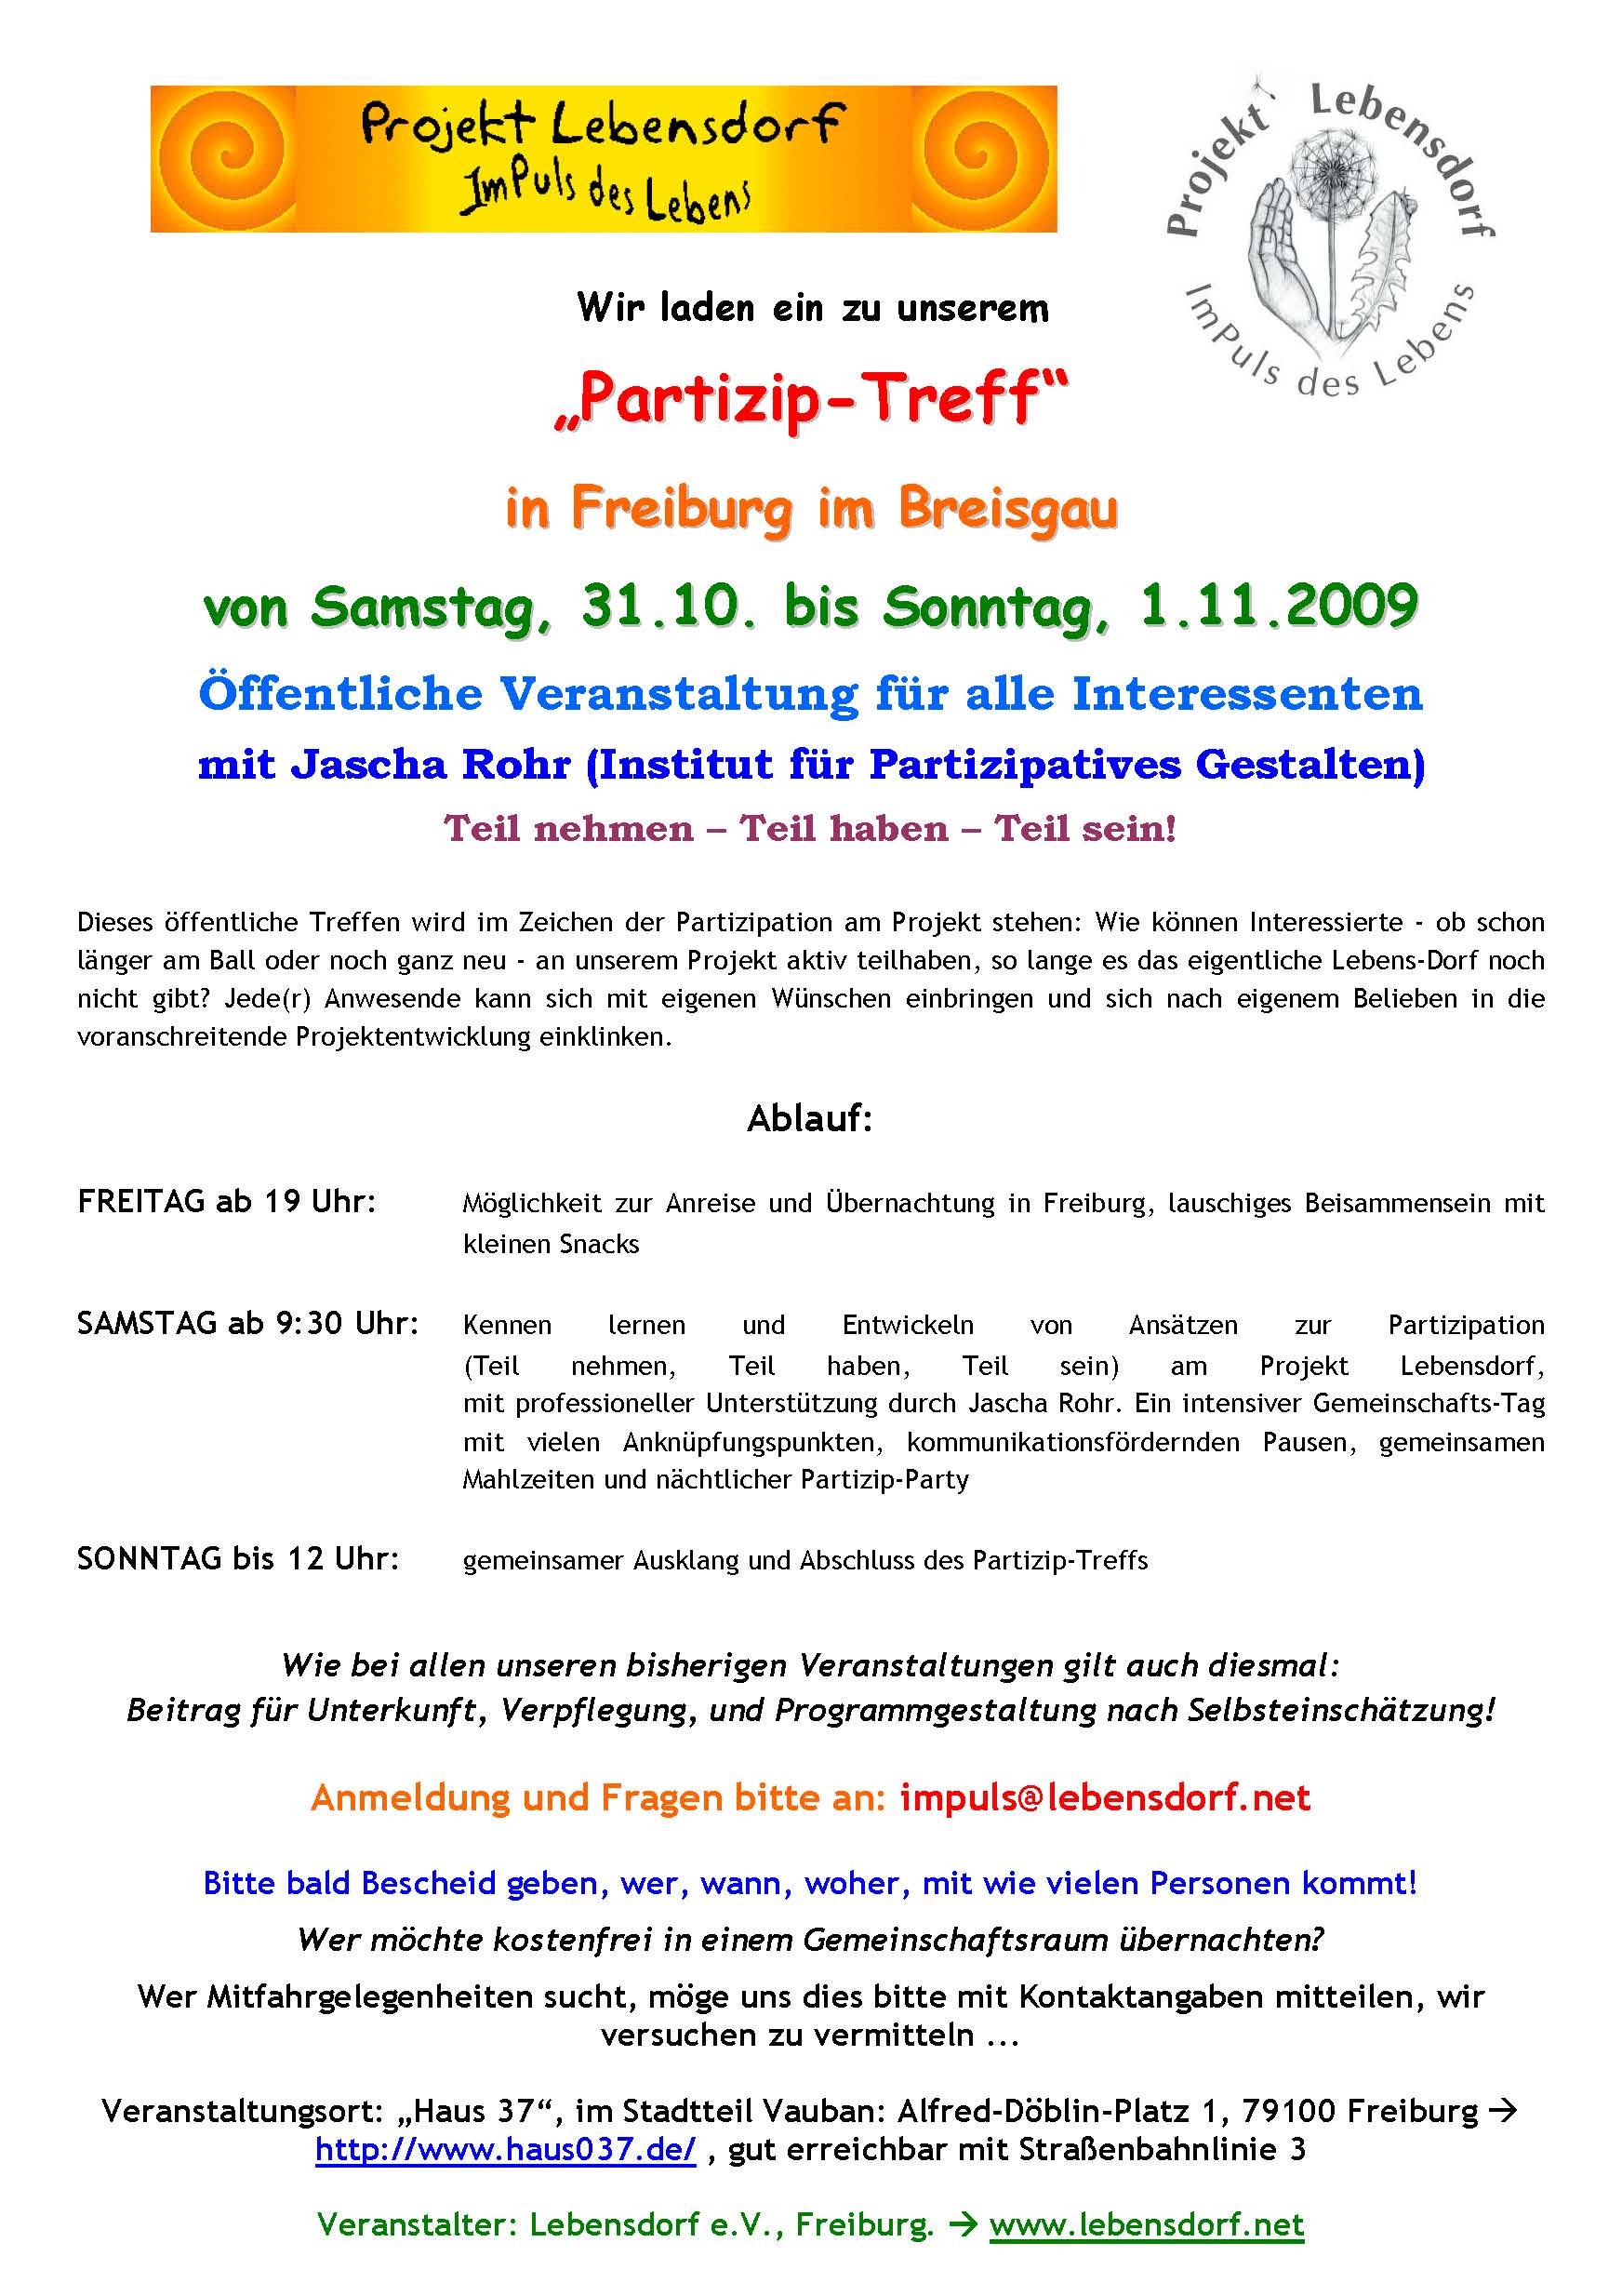 einladung-lebensdorf-partizip-treff-3110-11109